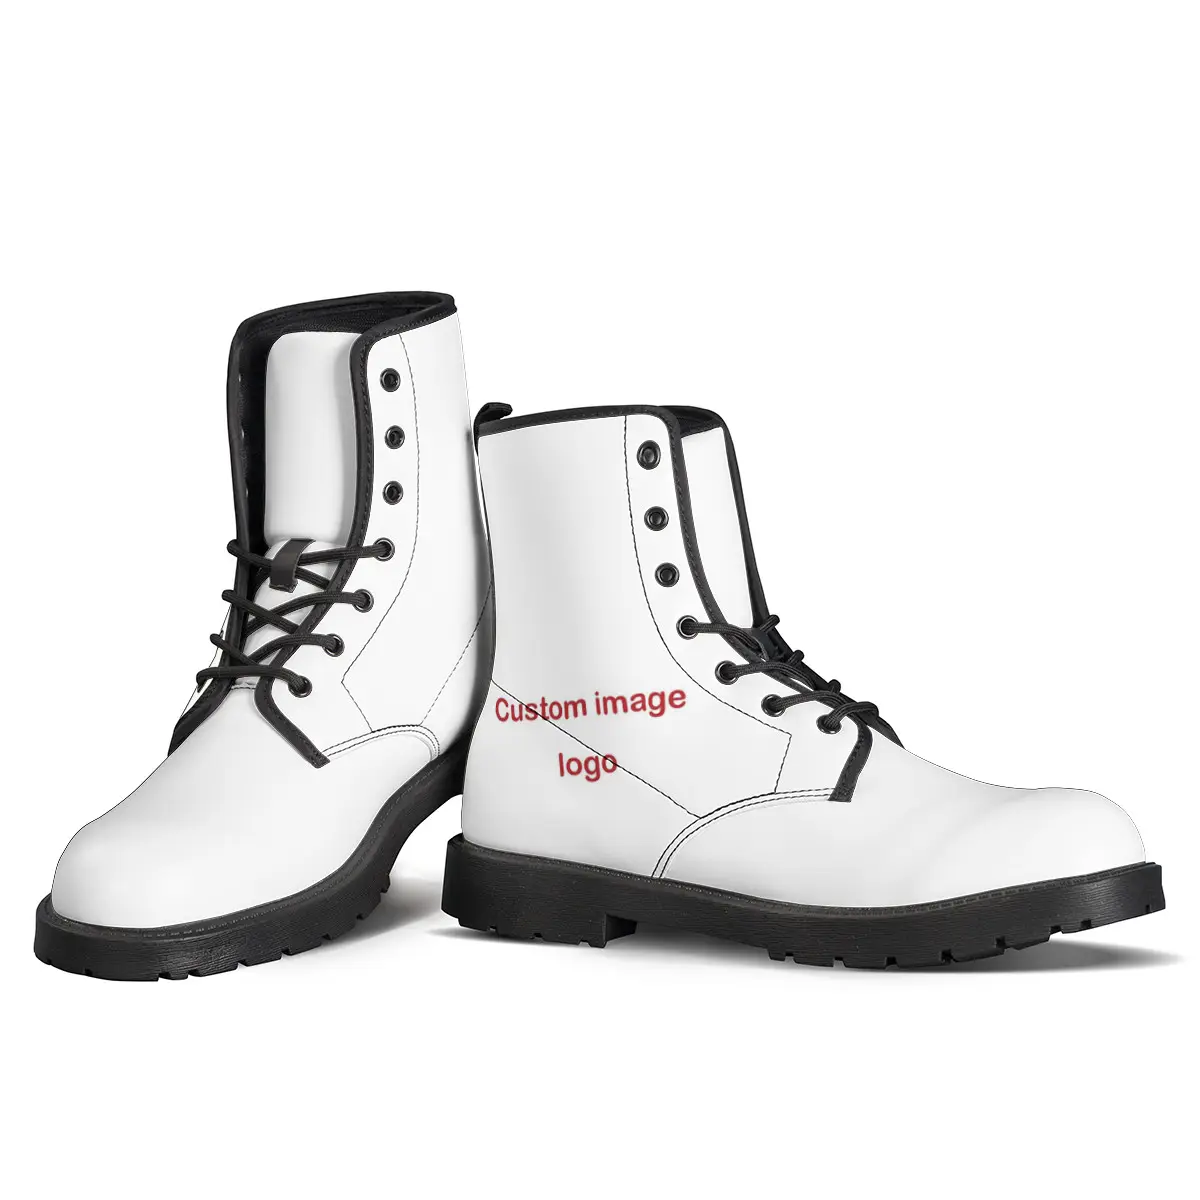 Botas de nieve de cuero genuino para hombre, zapatos masculinos de alta calidad, a medida, estilo clásico, color negro, informales